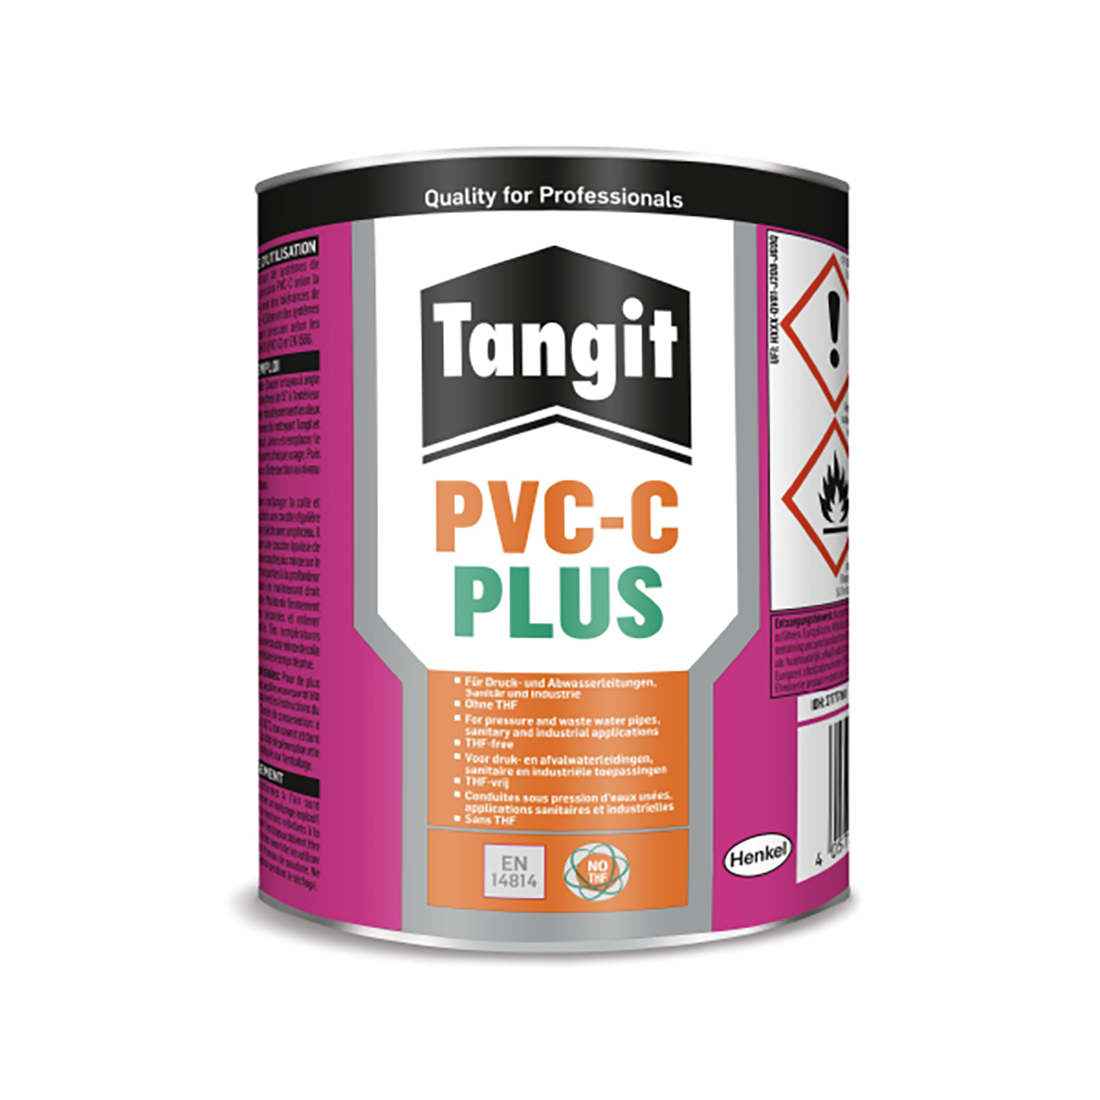 Tangit Lijm Tbv PVC-C PLUS 700g 799298052